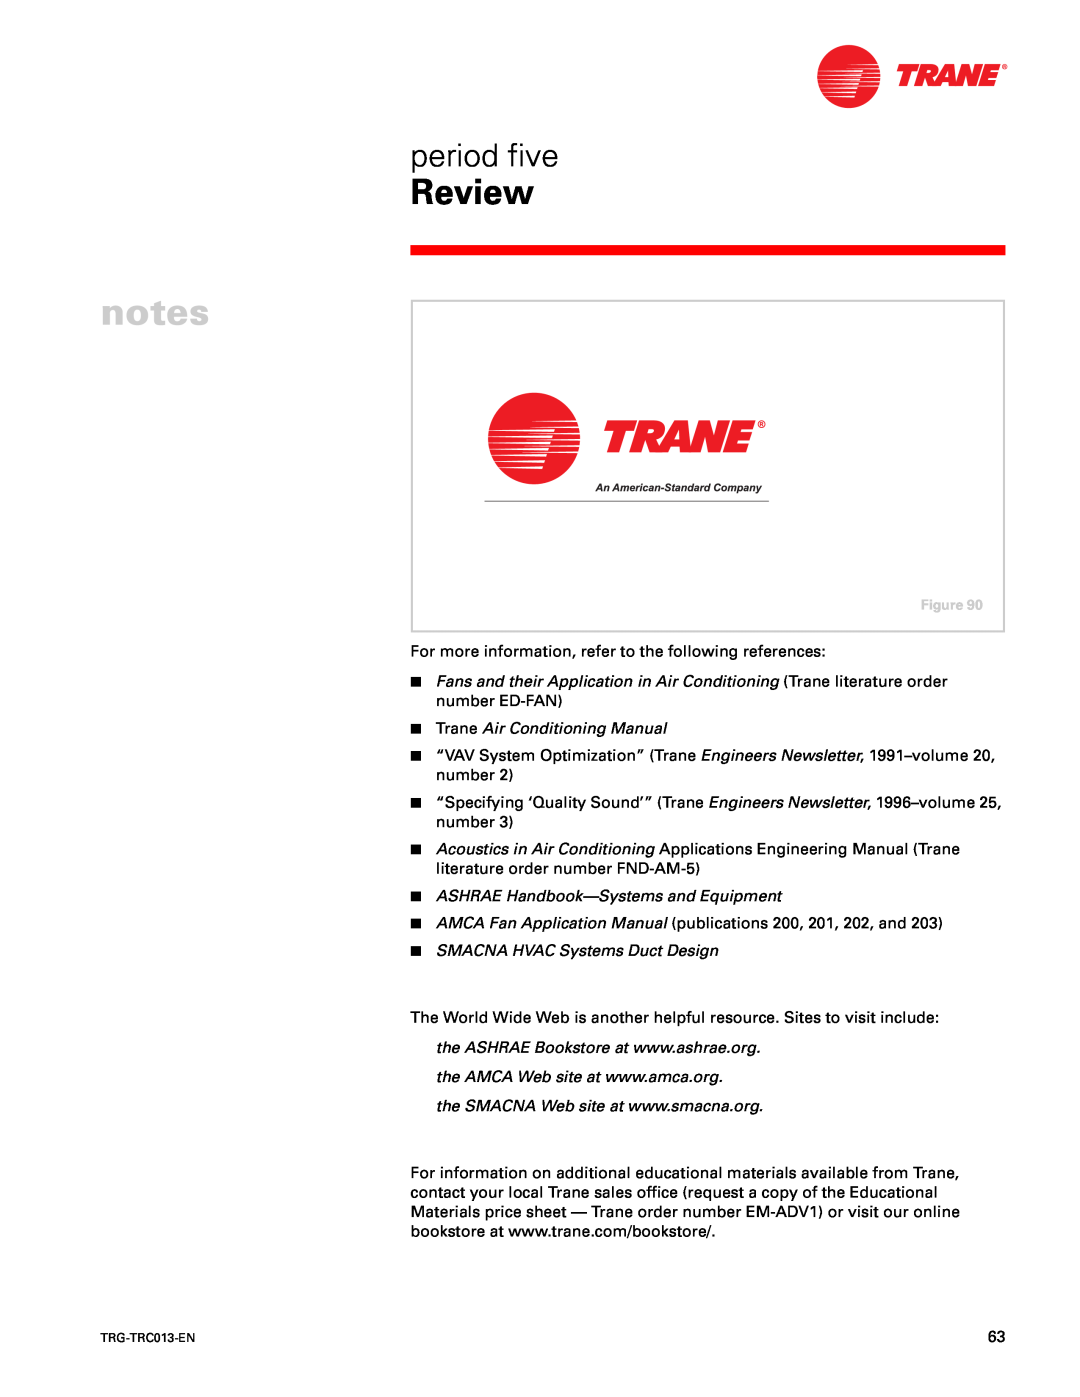 Trane TRG-TRC013-EN manual cp”t Kx 